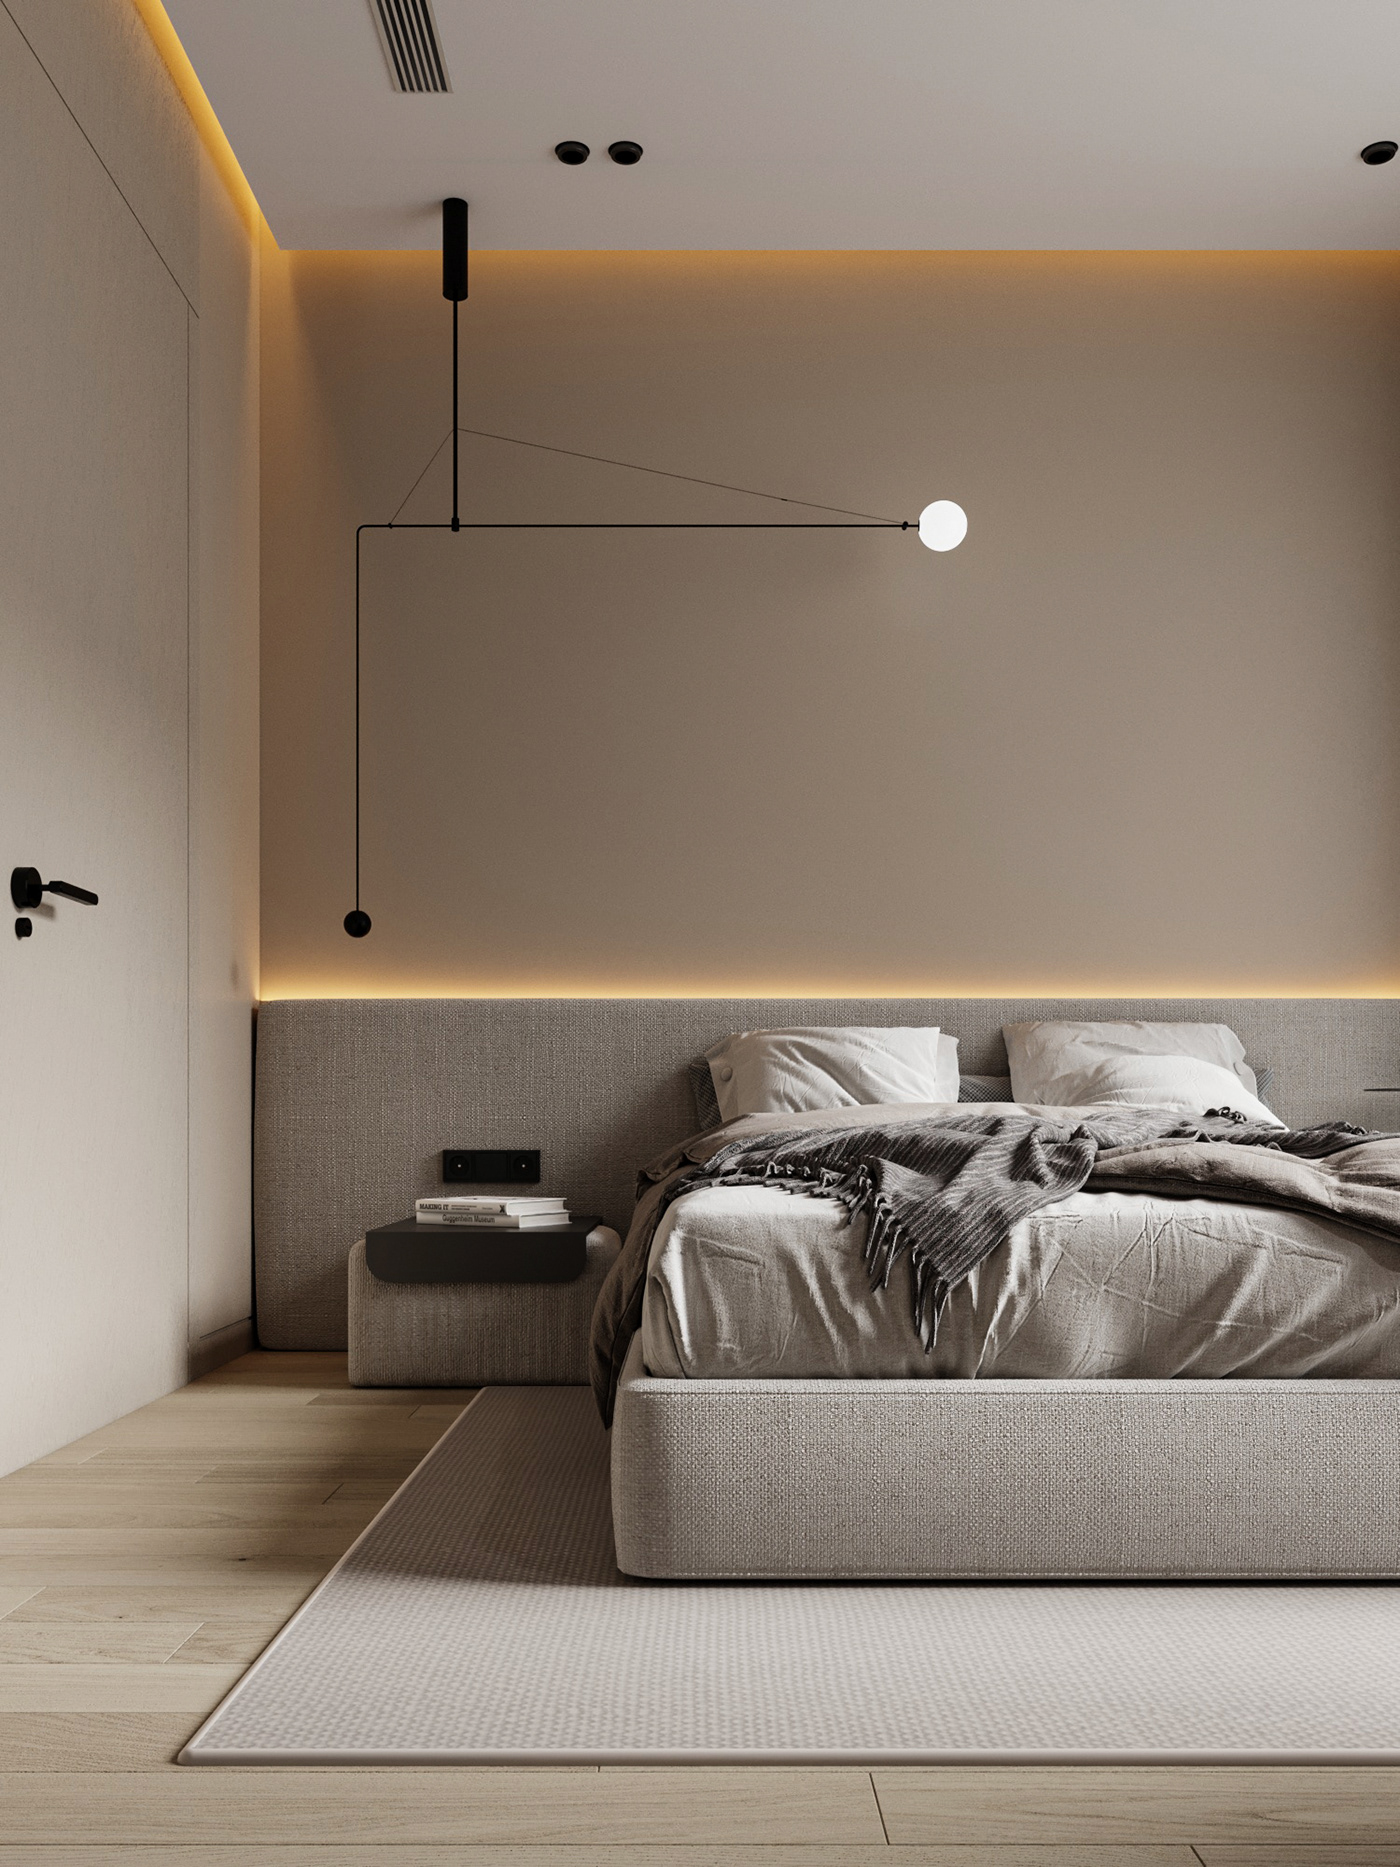 bedroom bedroom design Bedroom interior cozy decor home Interior interior design  interiordesign modern